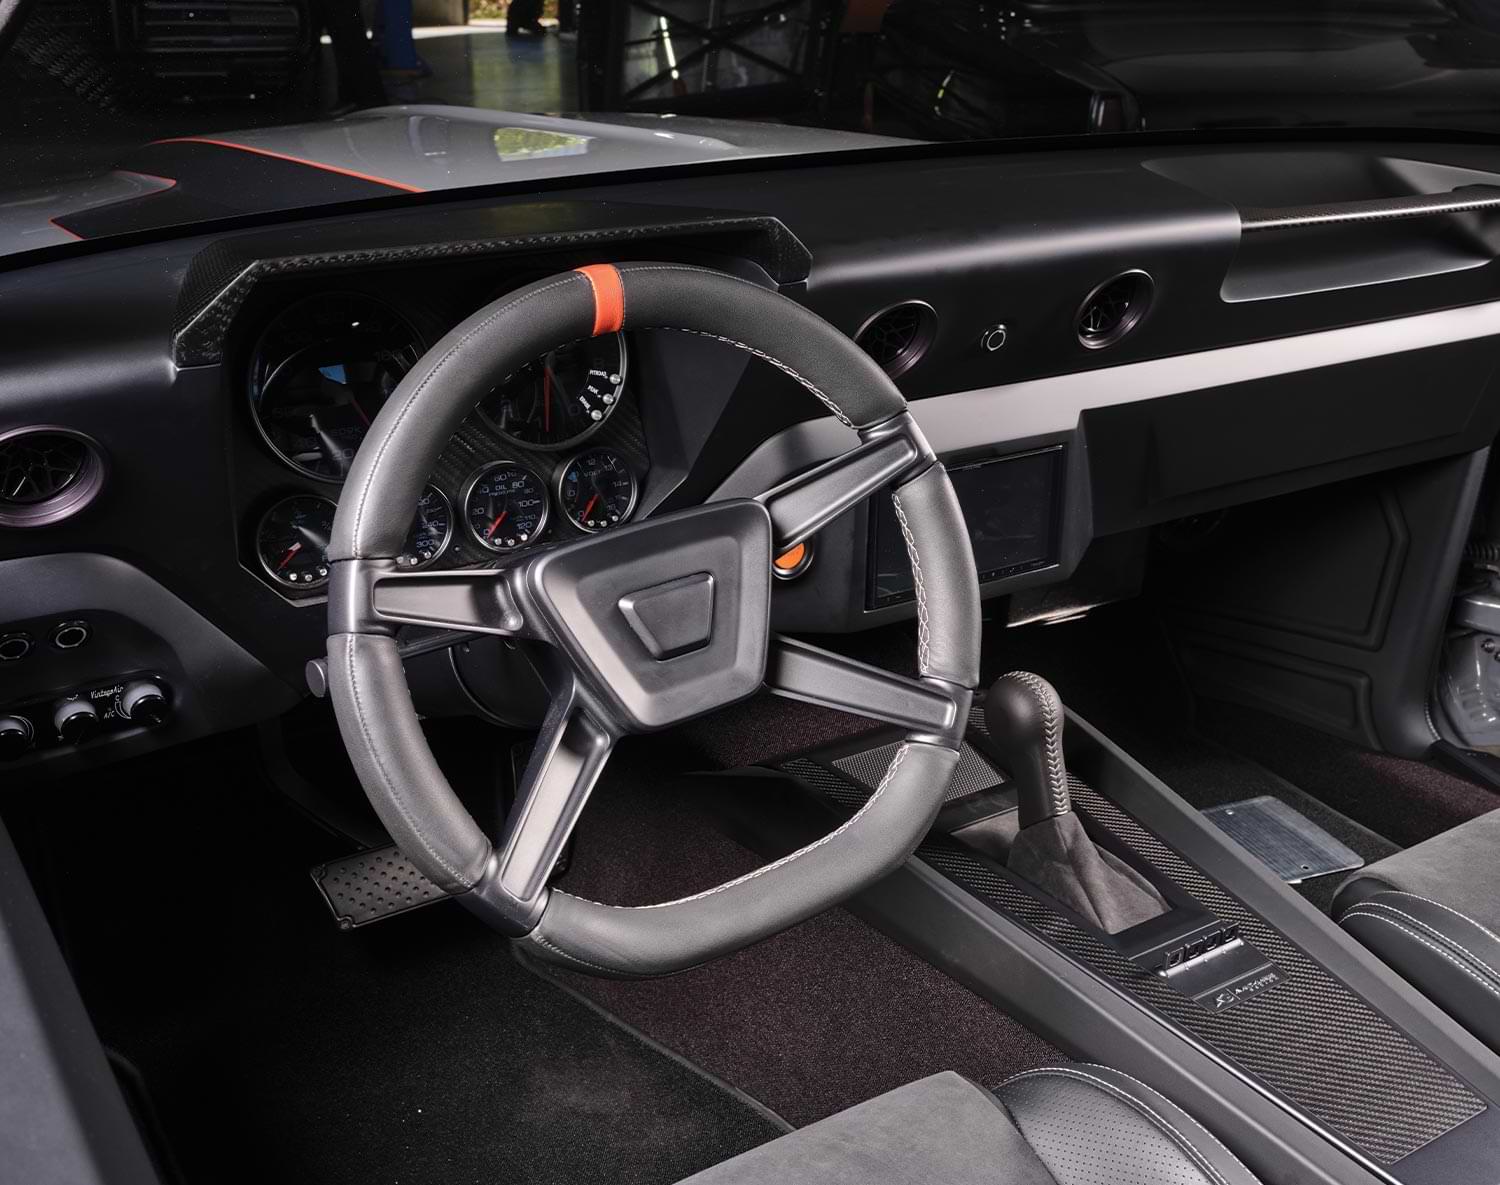 '69 Camaro steering wheel an dashboard